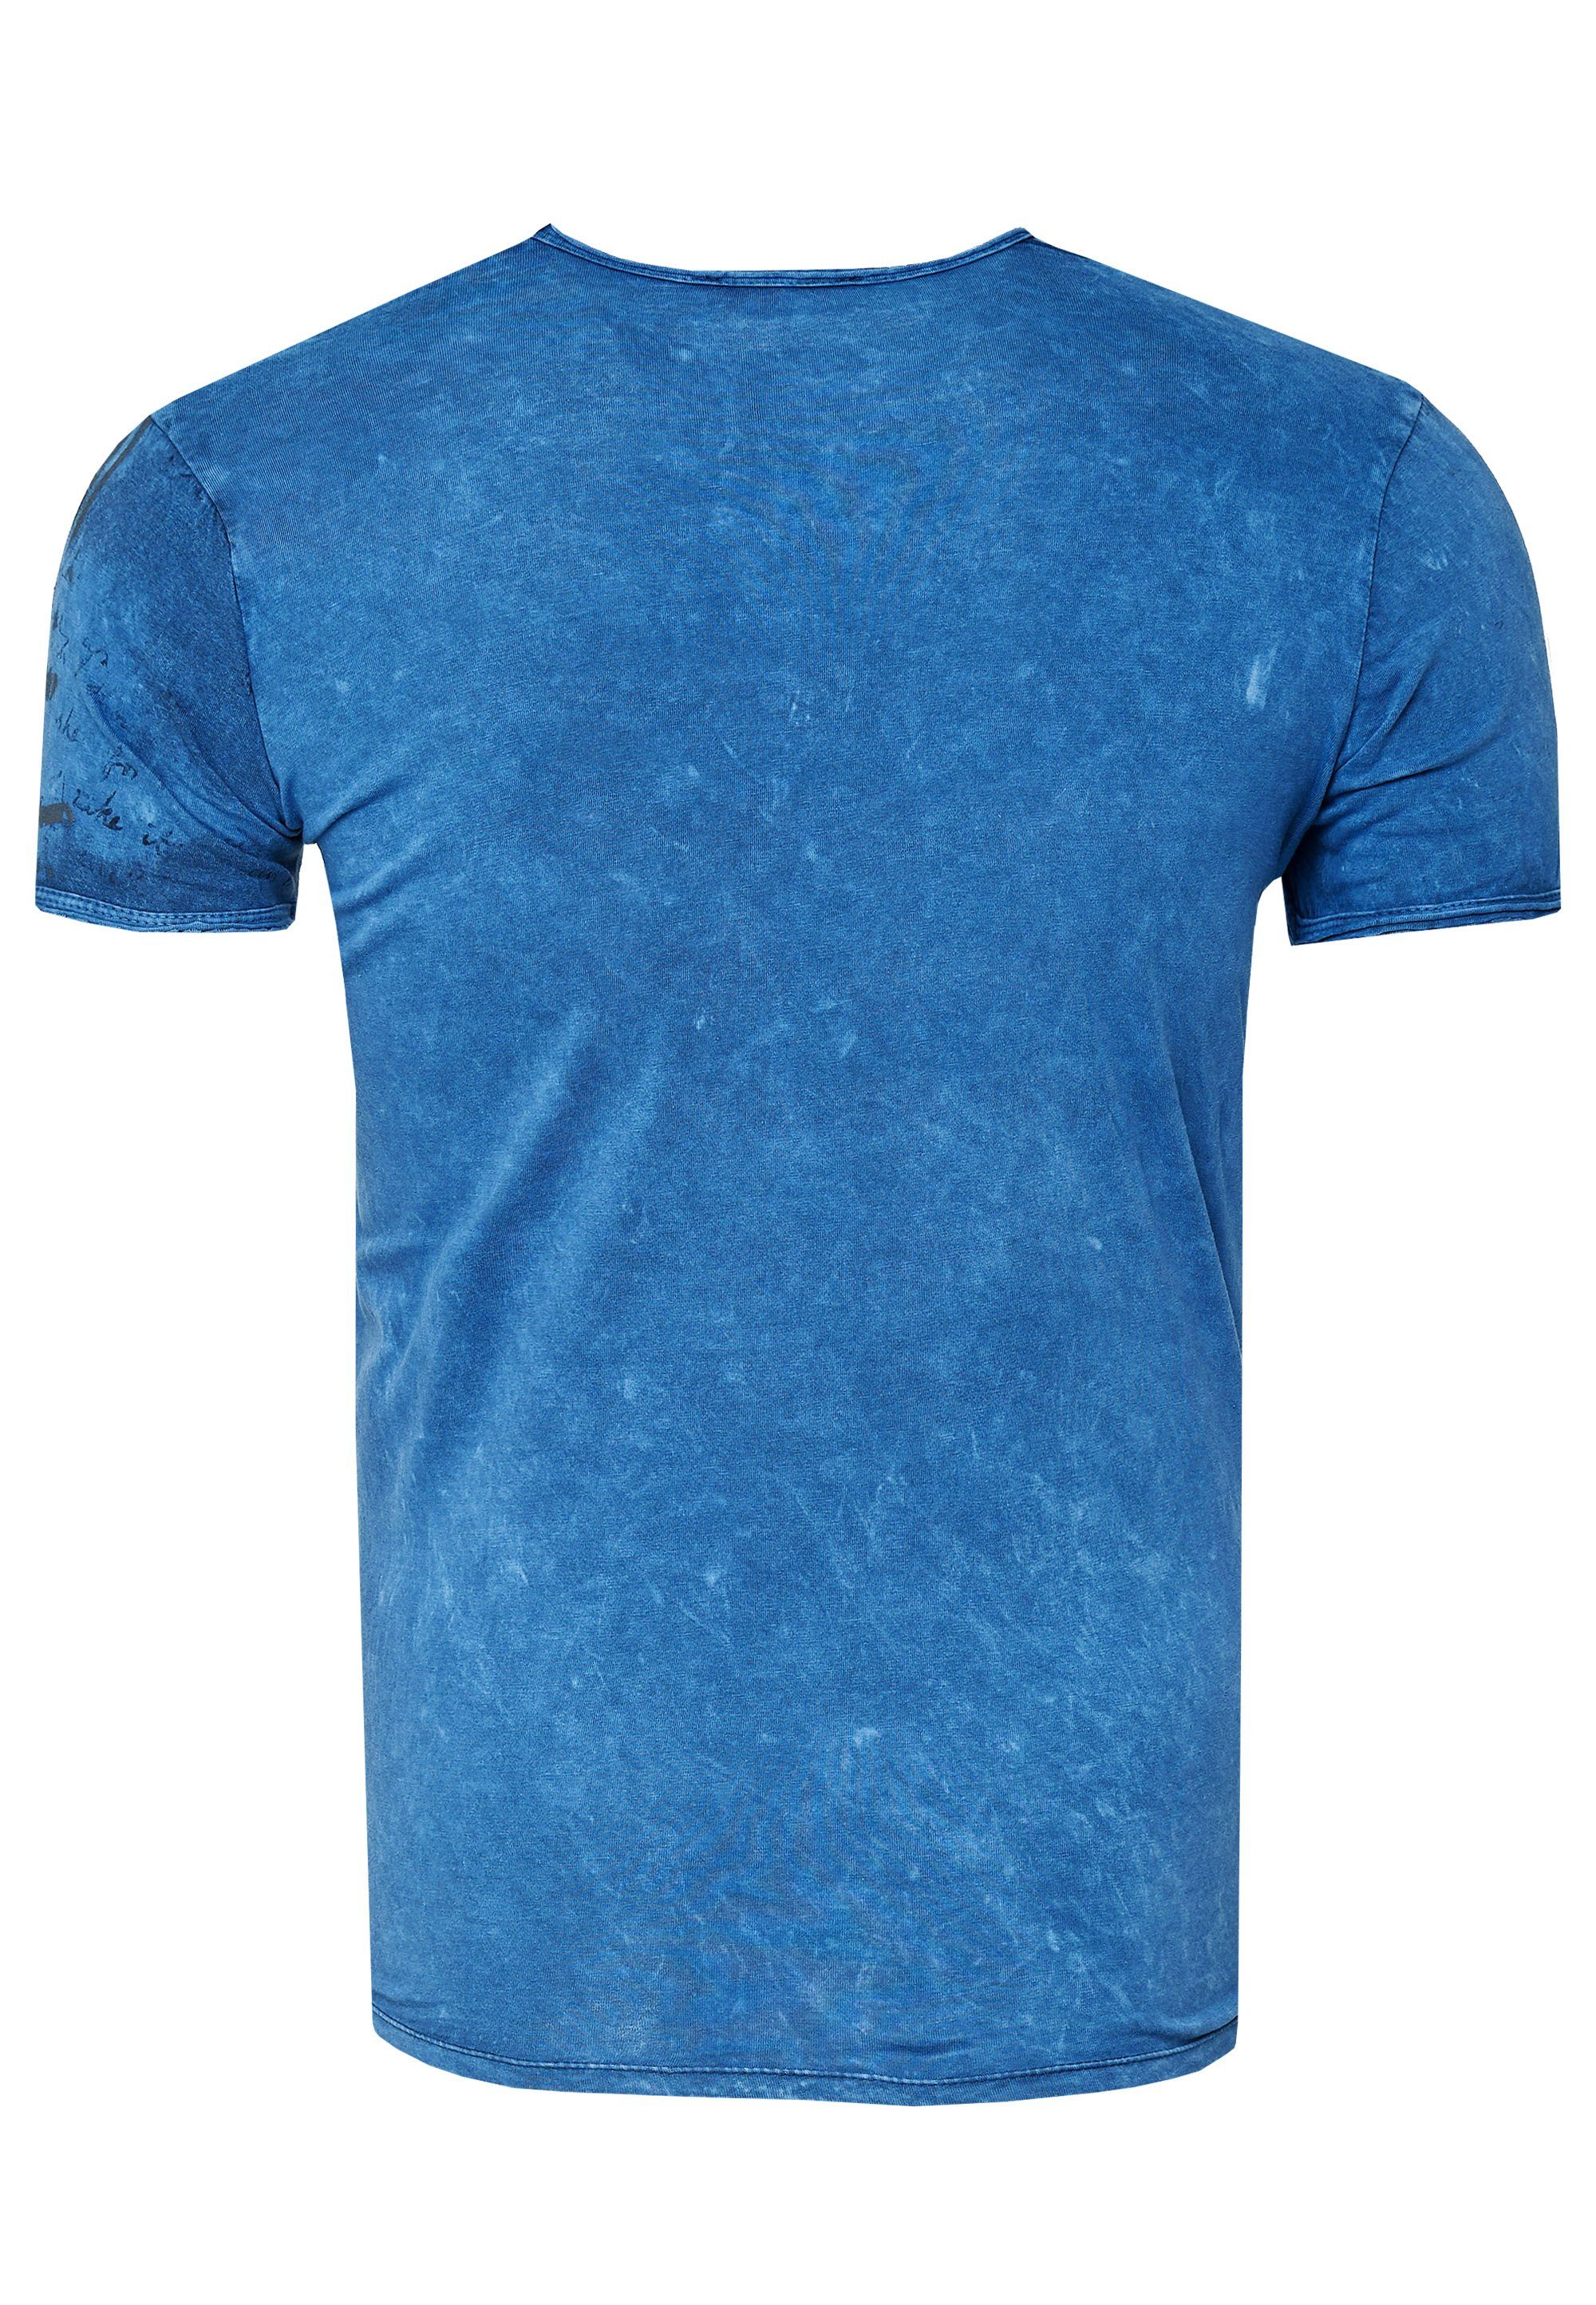 Rusty Neal T-Shirt mit blau eindrucksvollem Print